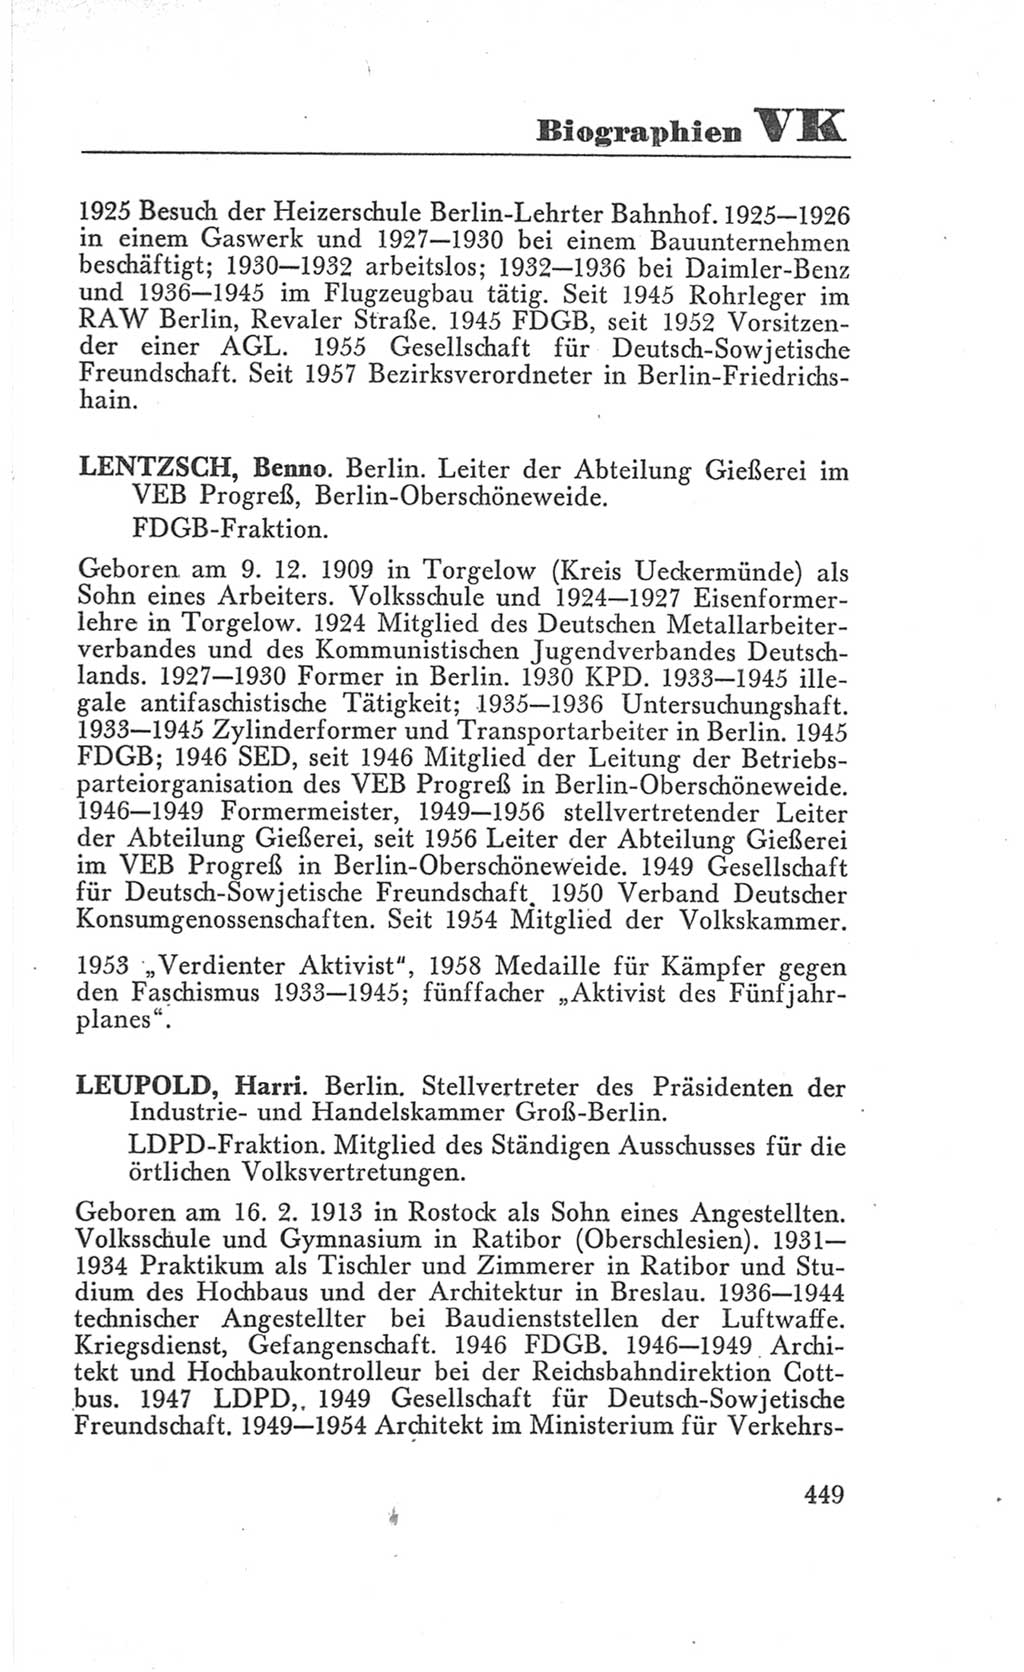 Handbuch der Volkskammer (VK) der Deutschen Demokratischen Republik (DDR), 3. Wahlperiode 1958-1963, Seite 449 (Hdb. VK. DDR 3. WP. 1958-1963, S. 449)